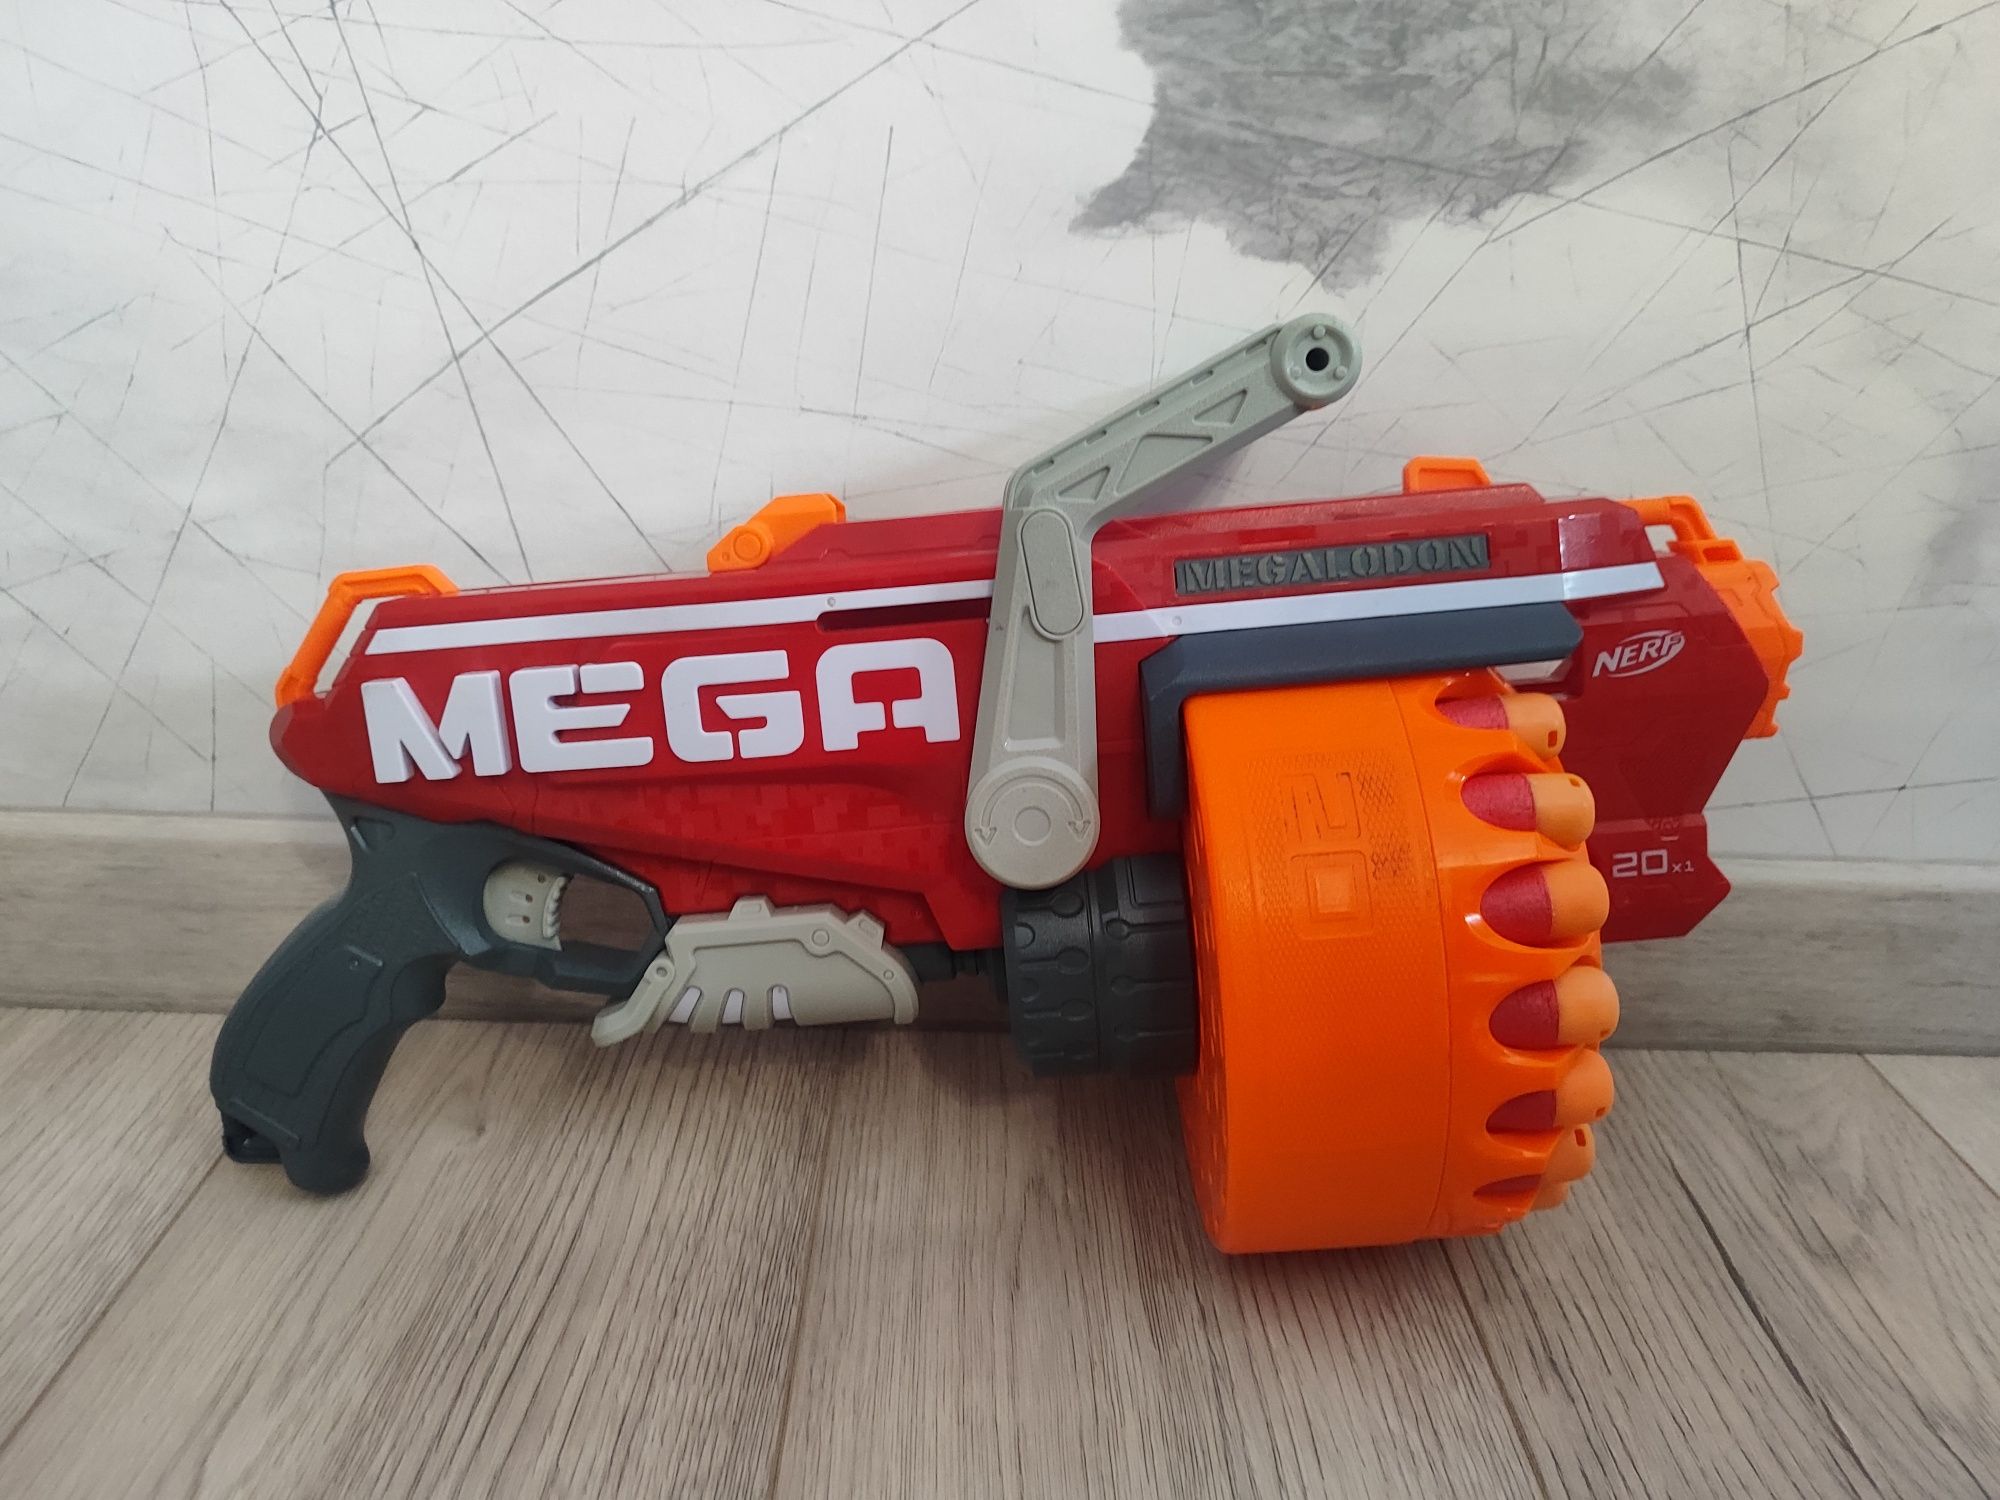 Pistolet na strzałki NERF Megalodon